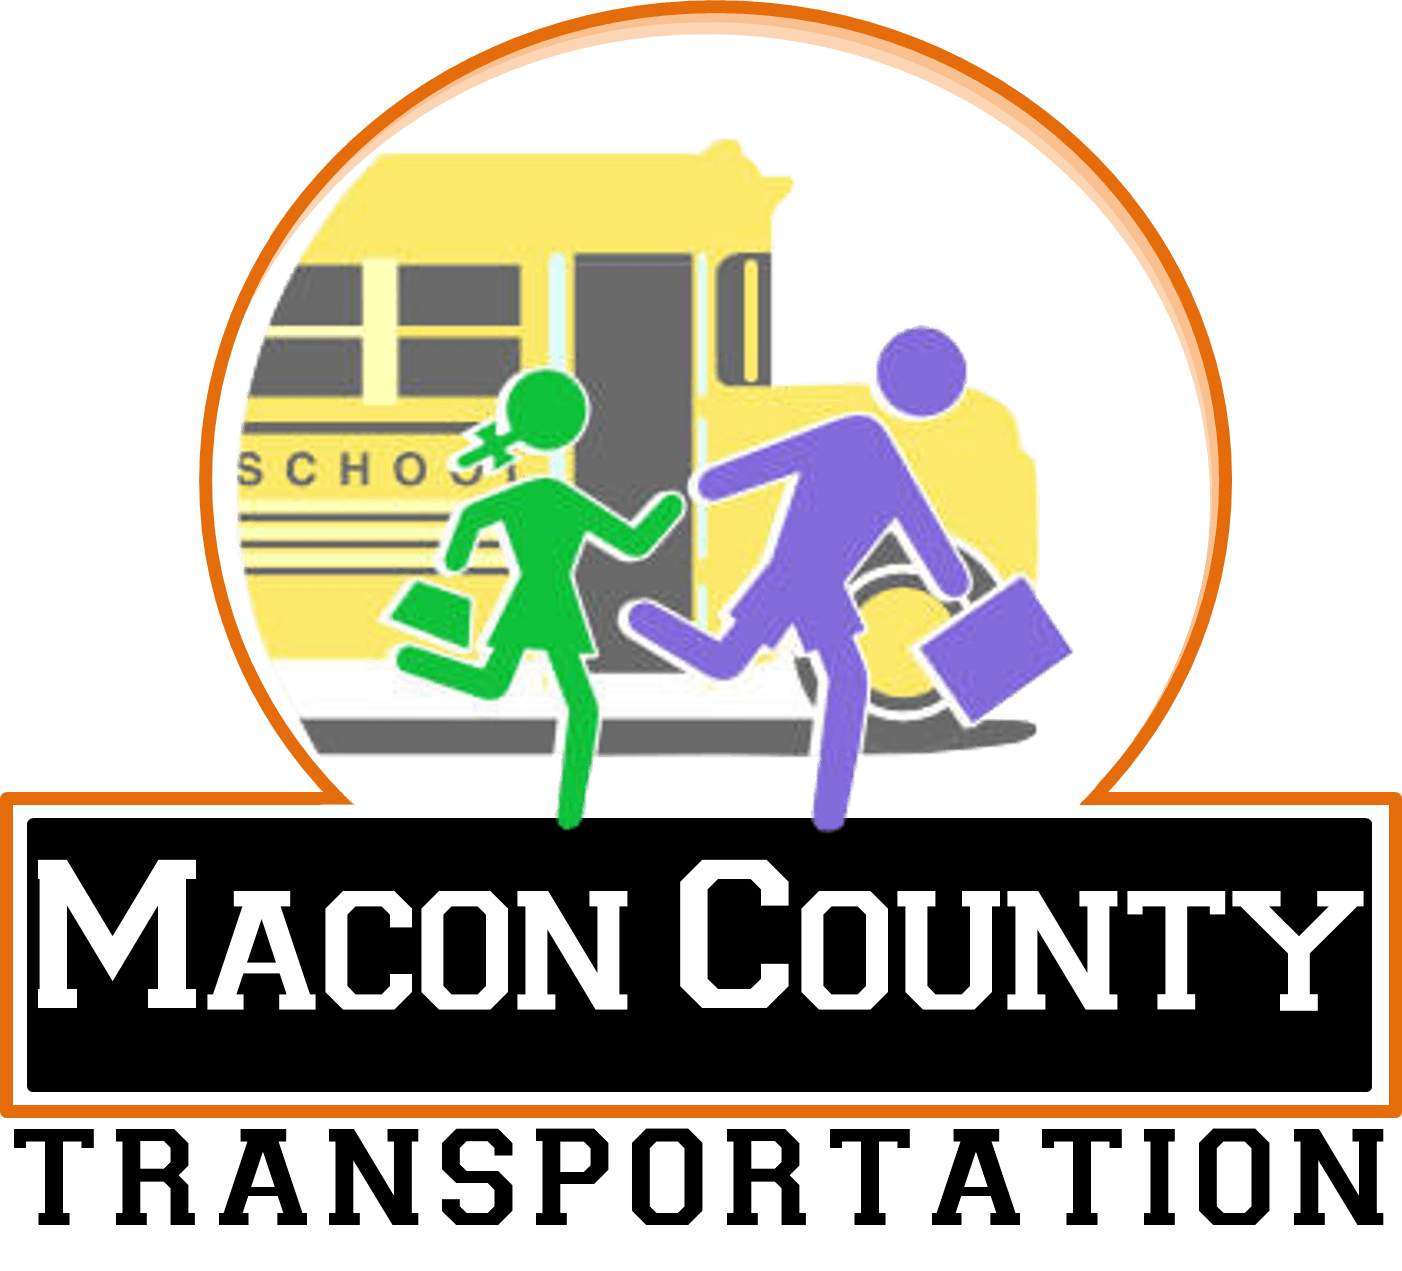 School Bus Company Logo - Transportation - Macon County R-1 School District